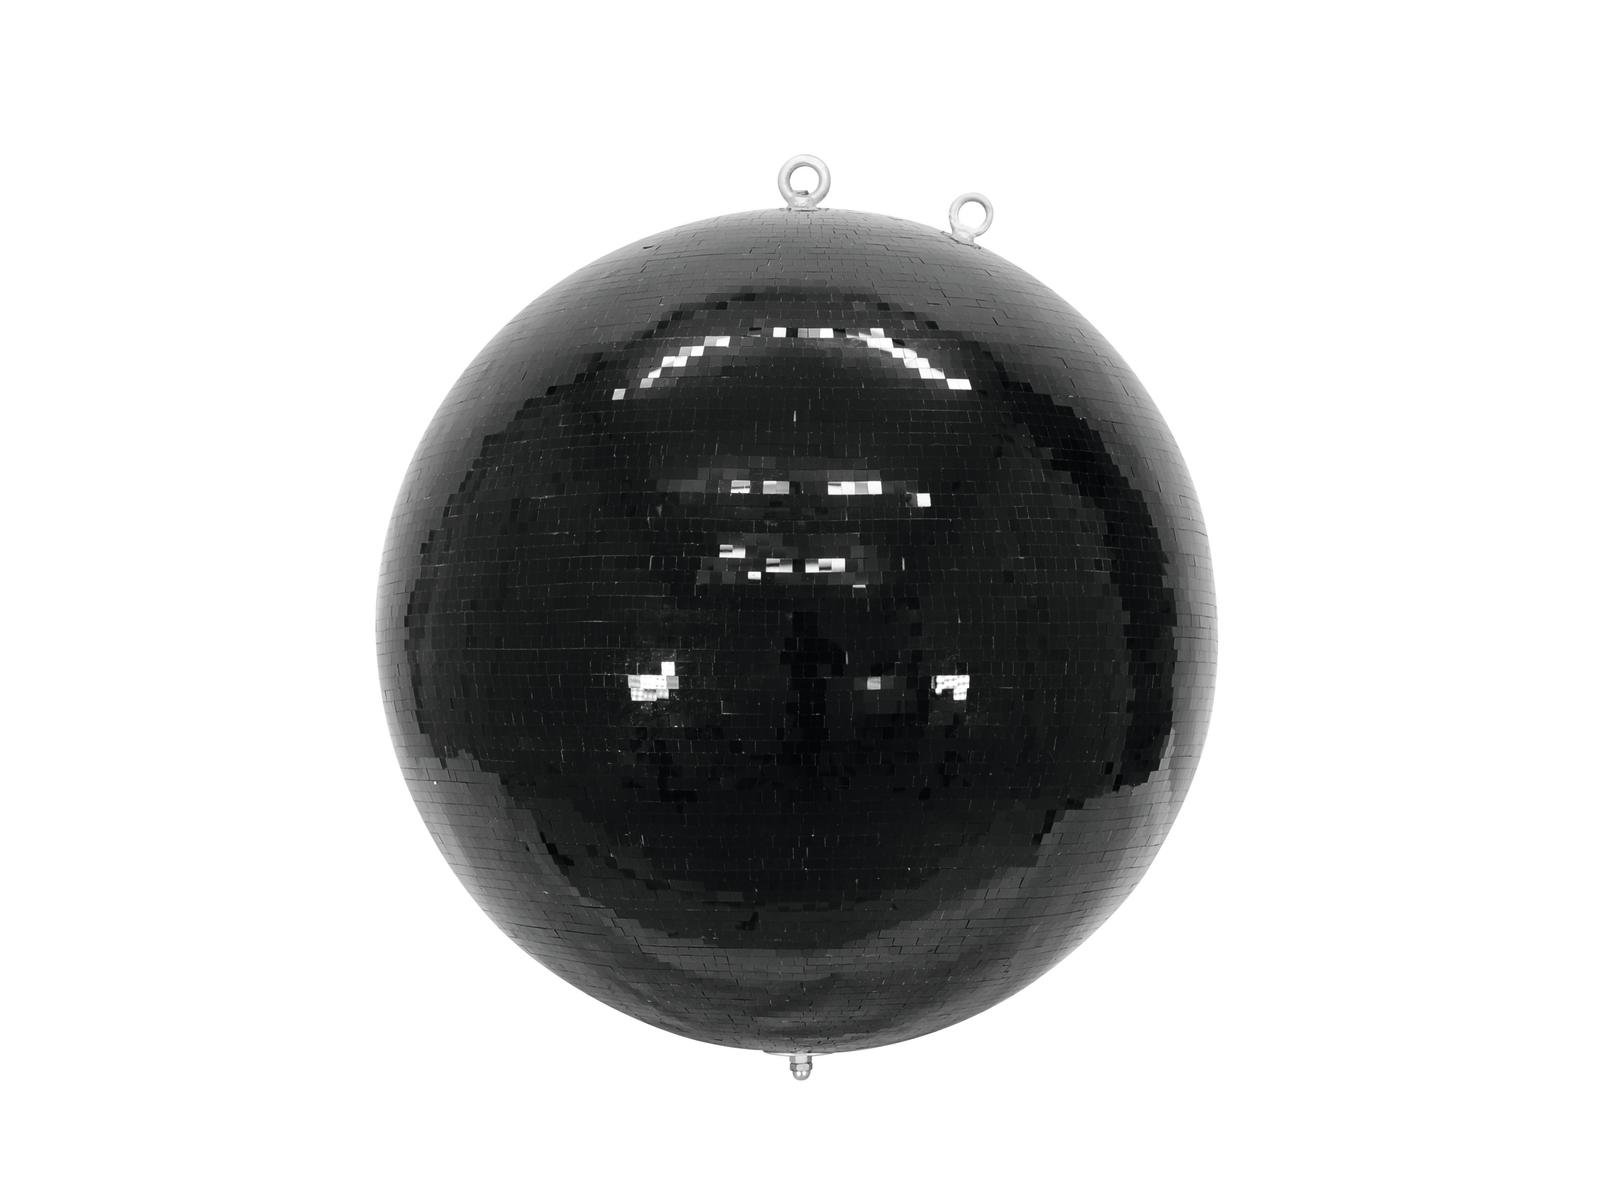 Spiegelkugel 75cm schwarz- Diskokugel (Discokugel) Party Lichteffekt - Echtglas - mirrorball safety black color